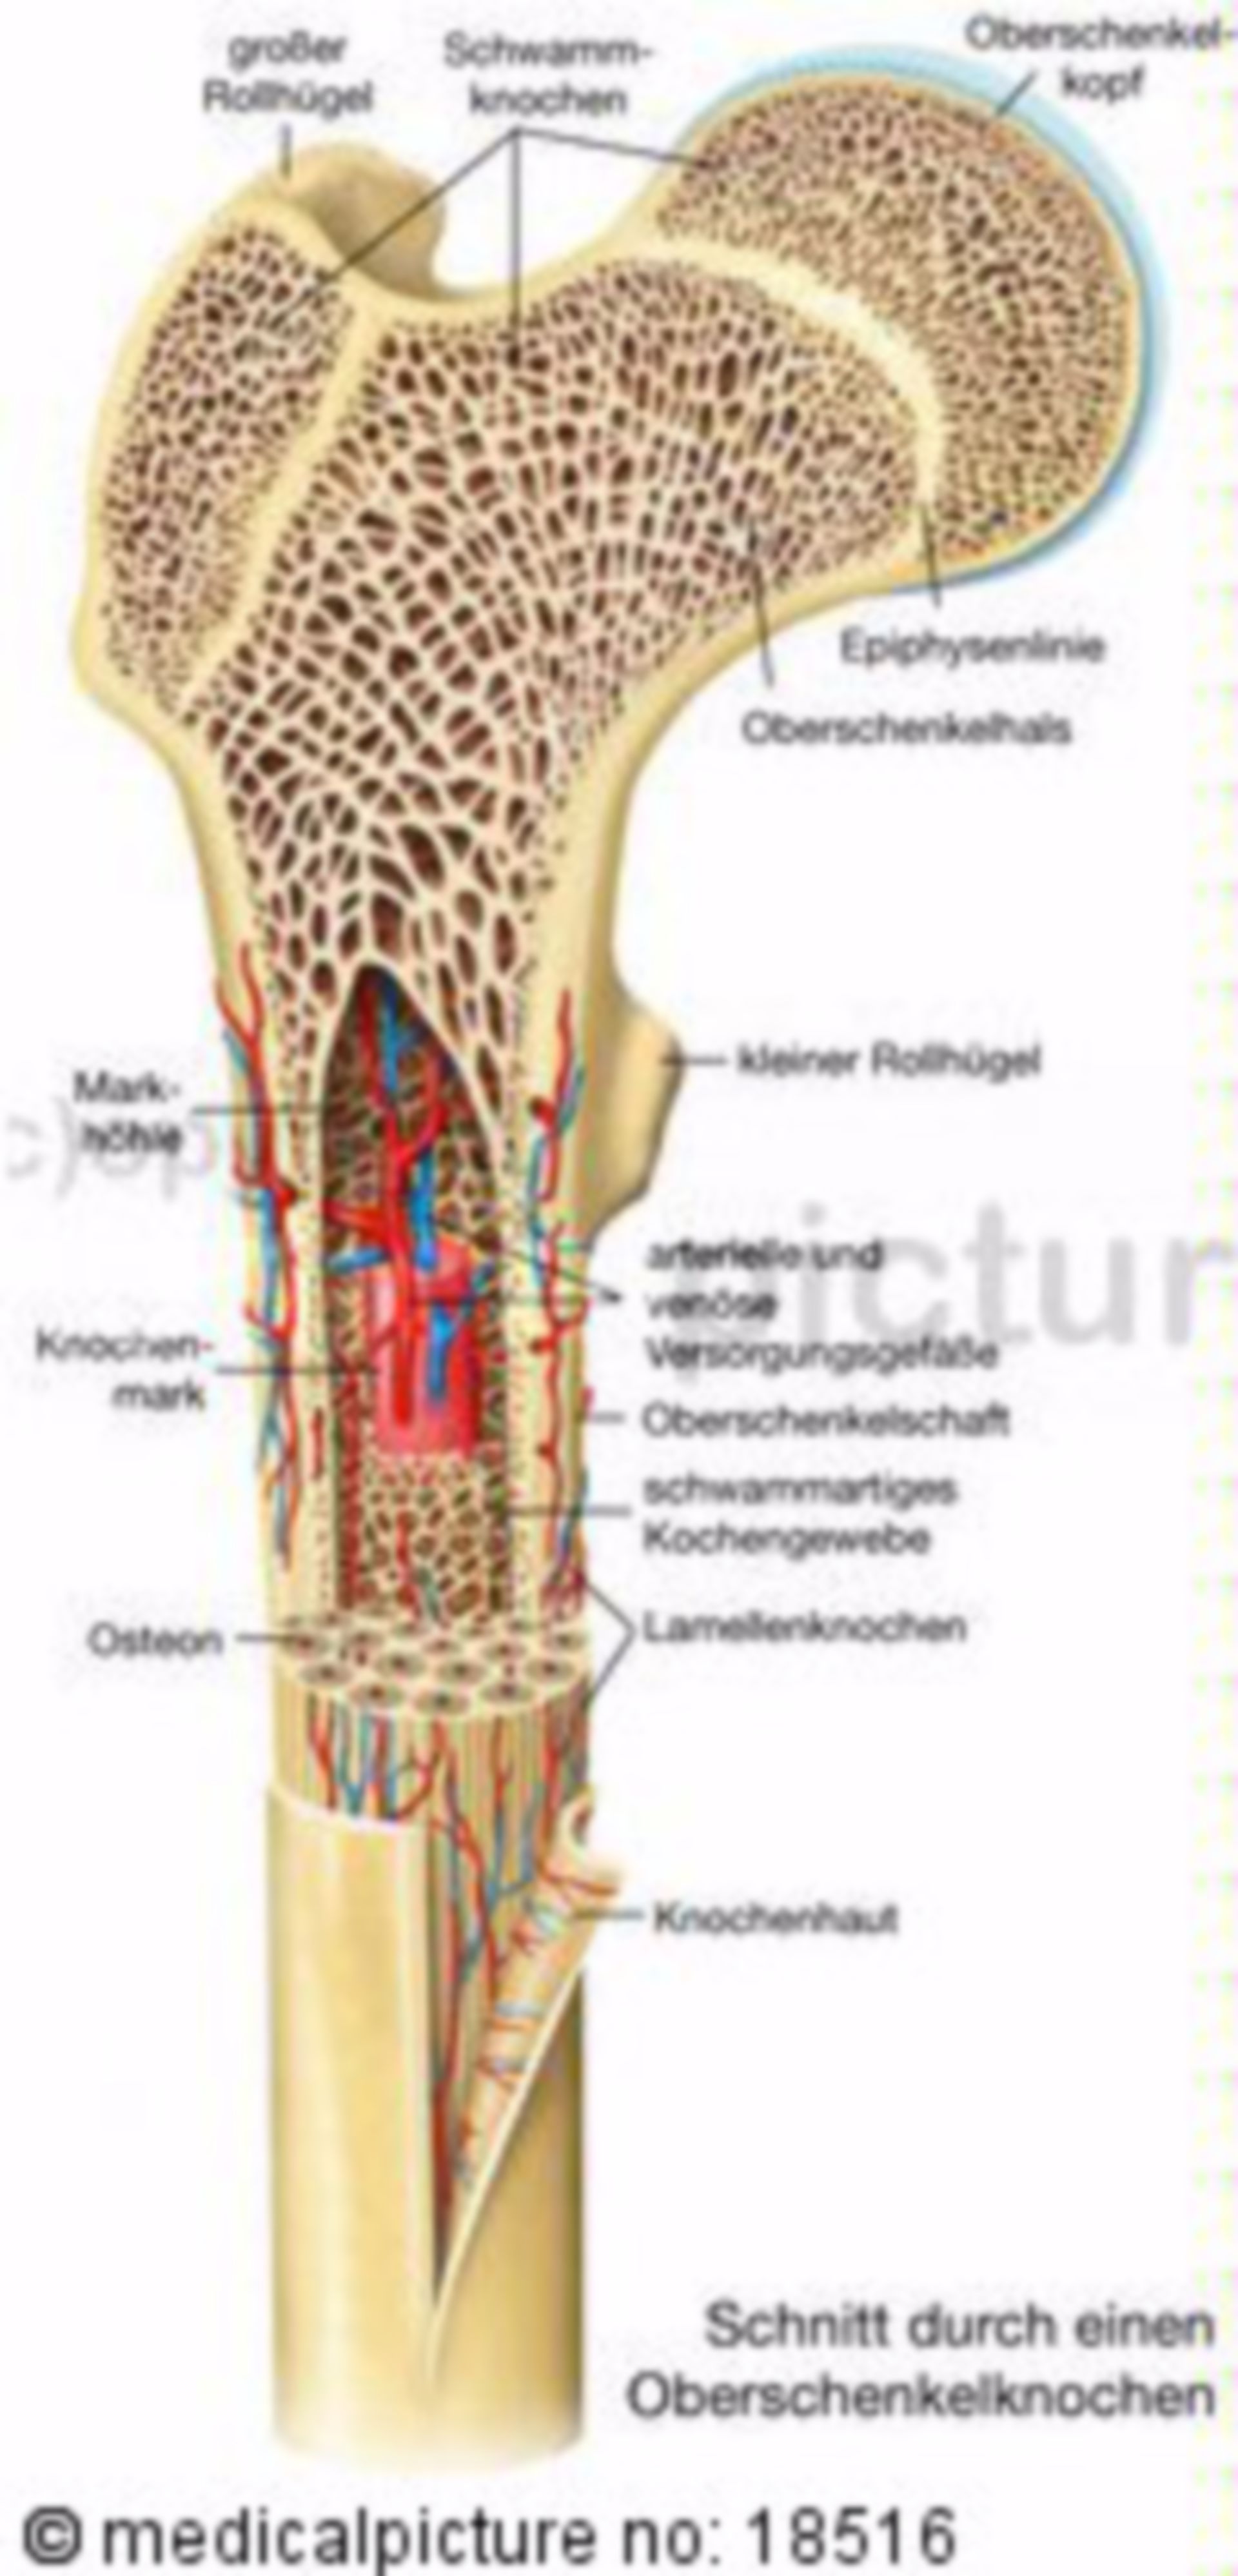 Structure of a lamellar bone